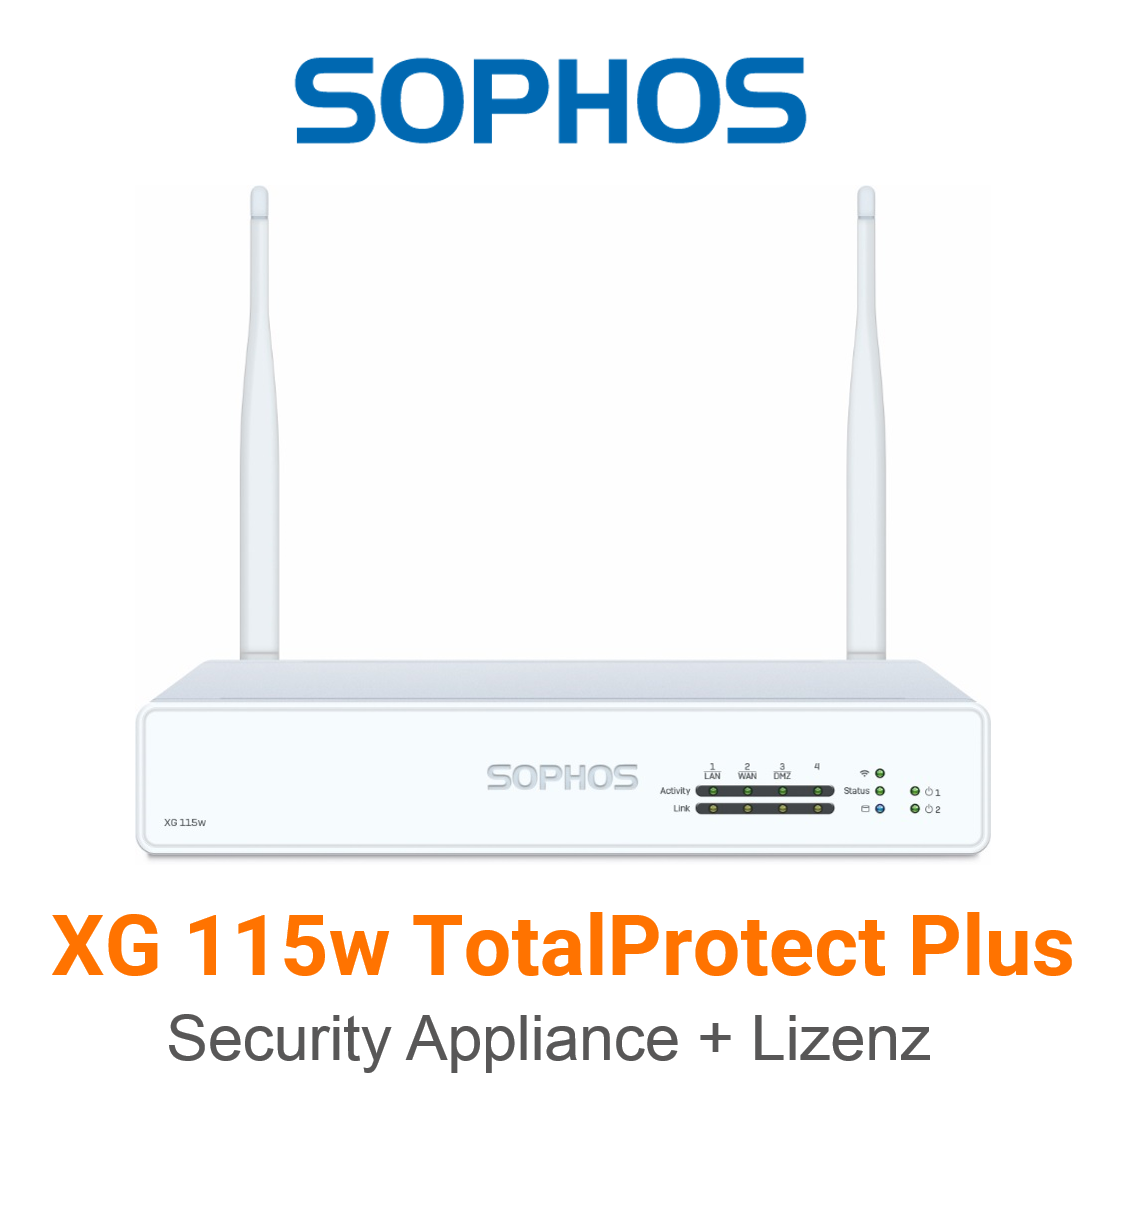 Sophos XG 115w TotalProtect Plus Bundle (Hardware + Lizenz) (End of Sale/Life)